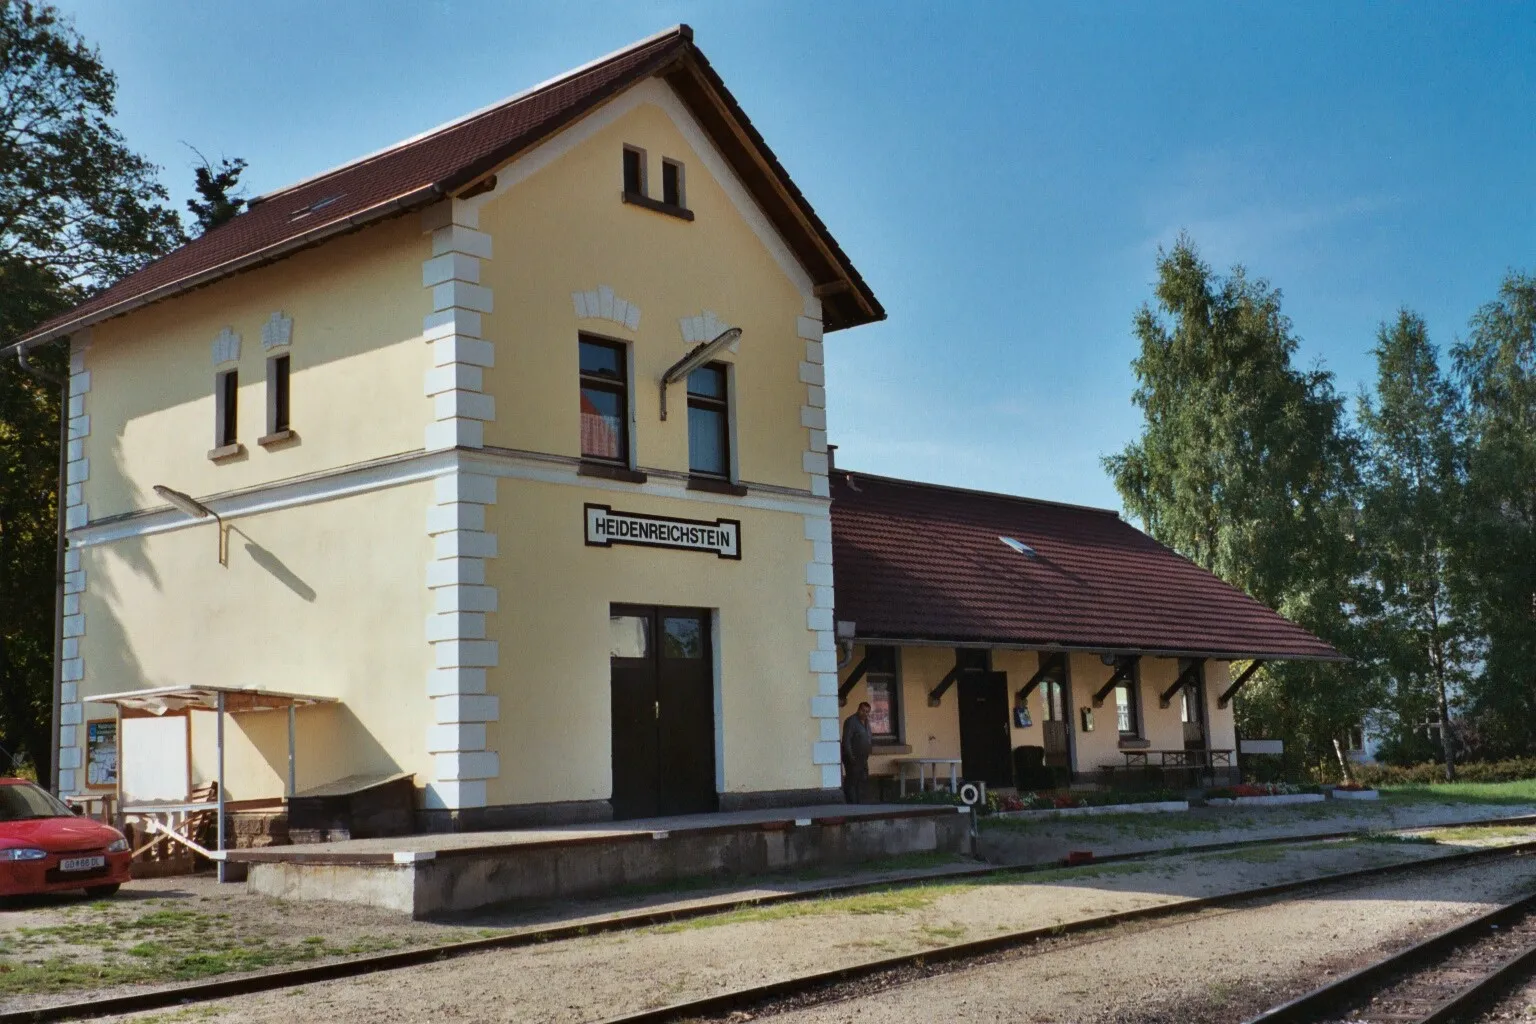 Photo showing: Railway station Heidenreichstein in Austria